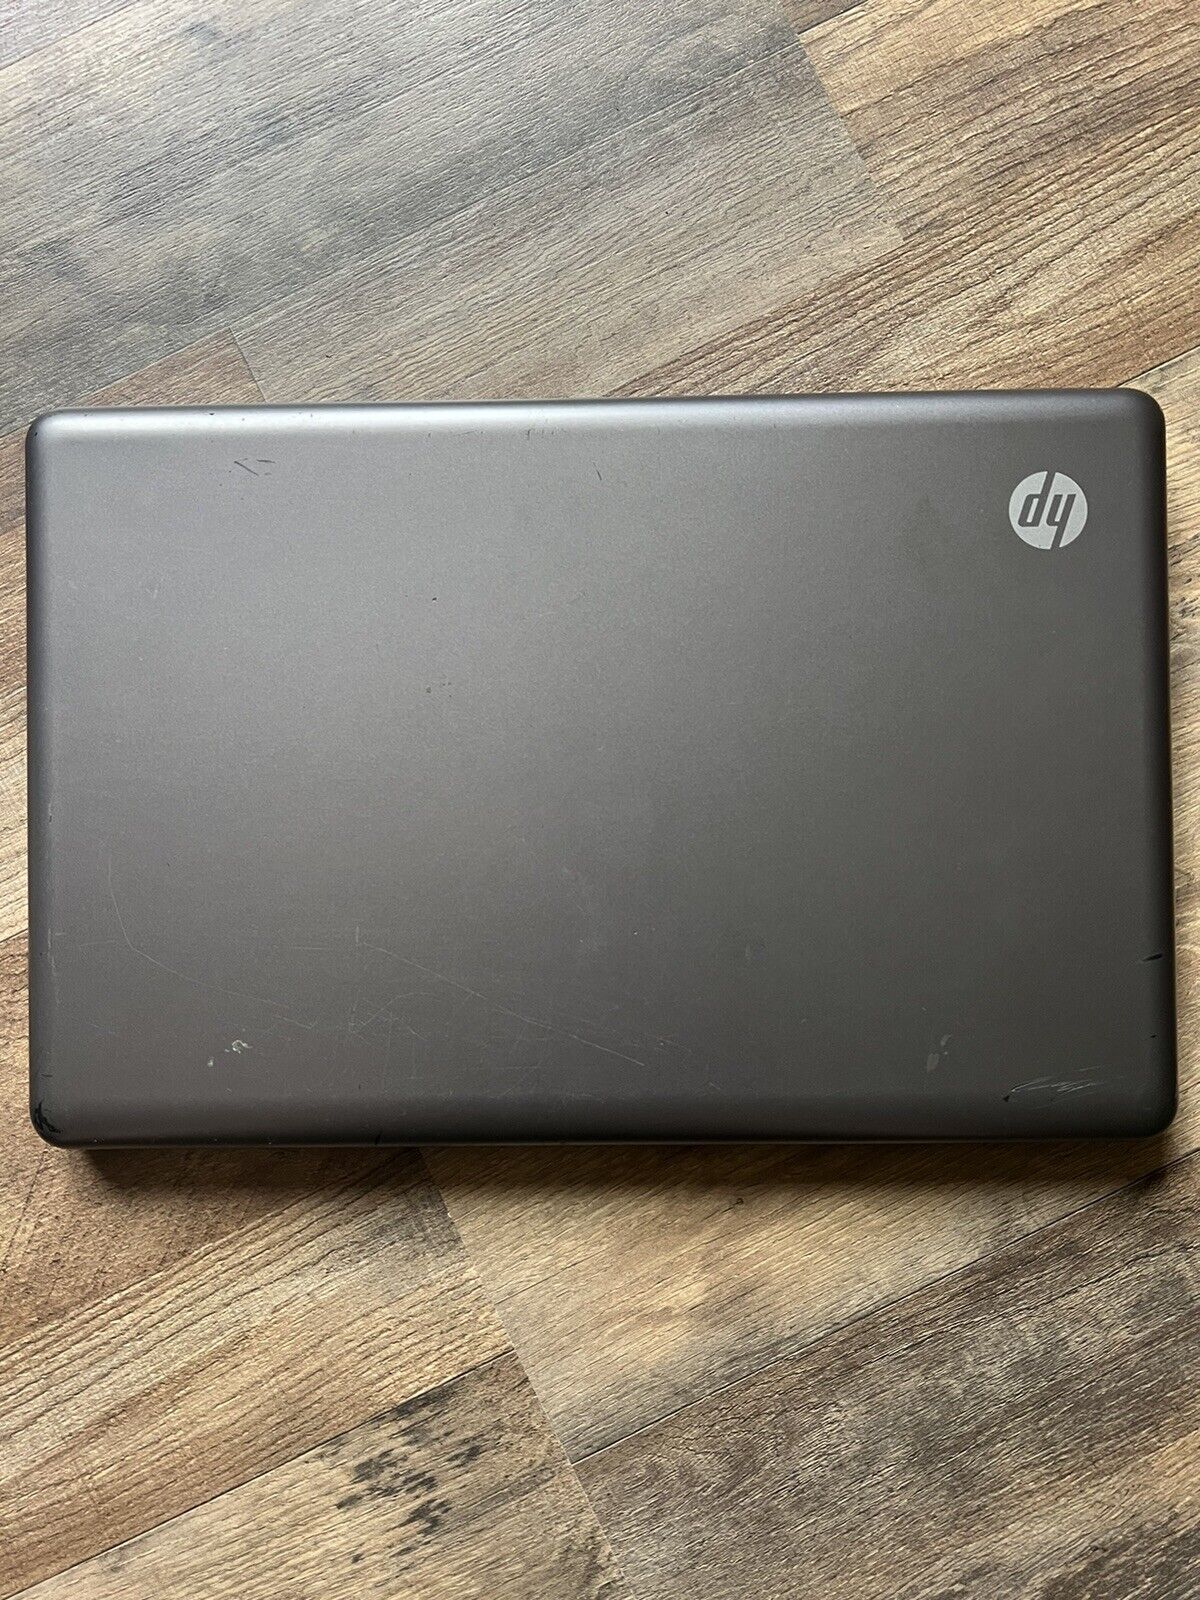 HP 2000-299wm Notebook PC 3GB 1T HDD 15.6